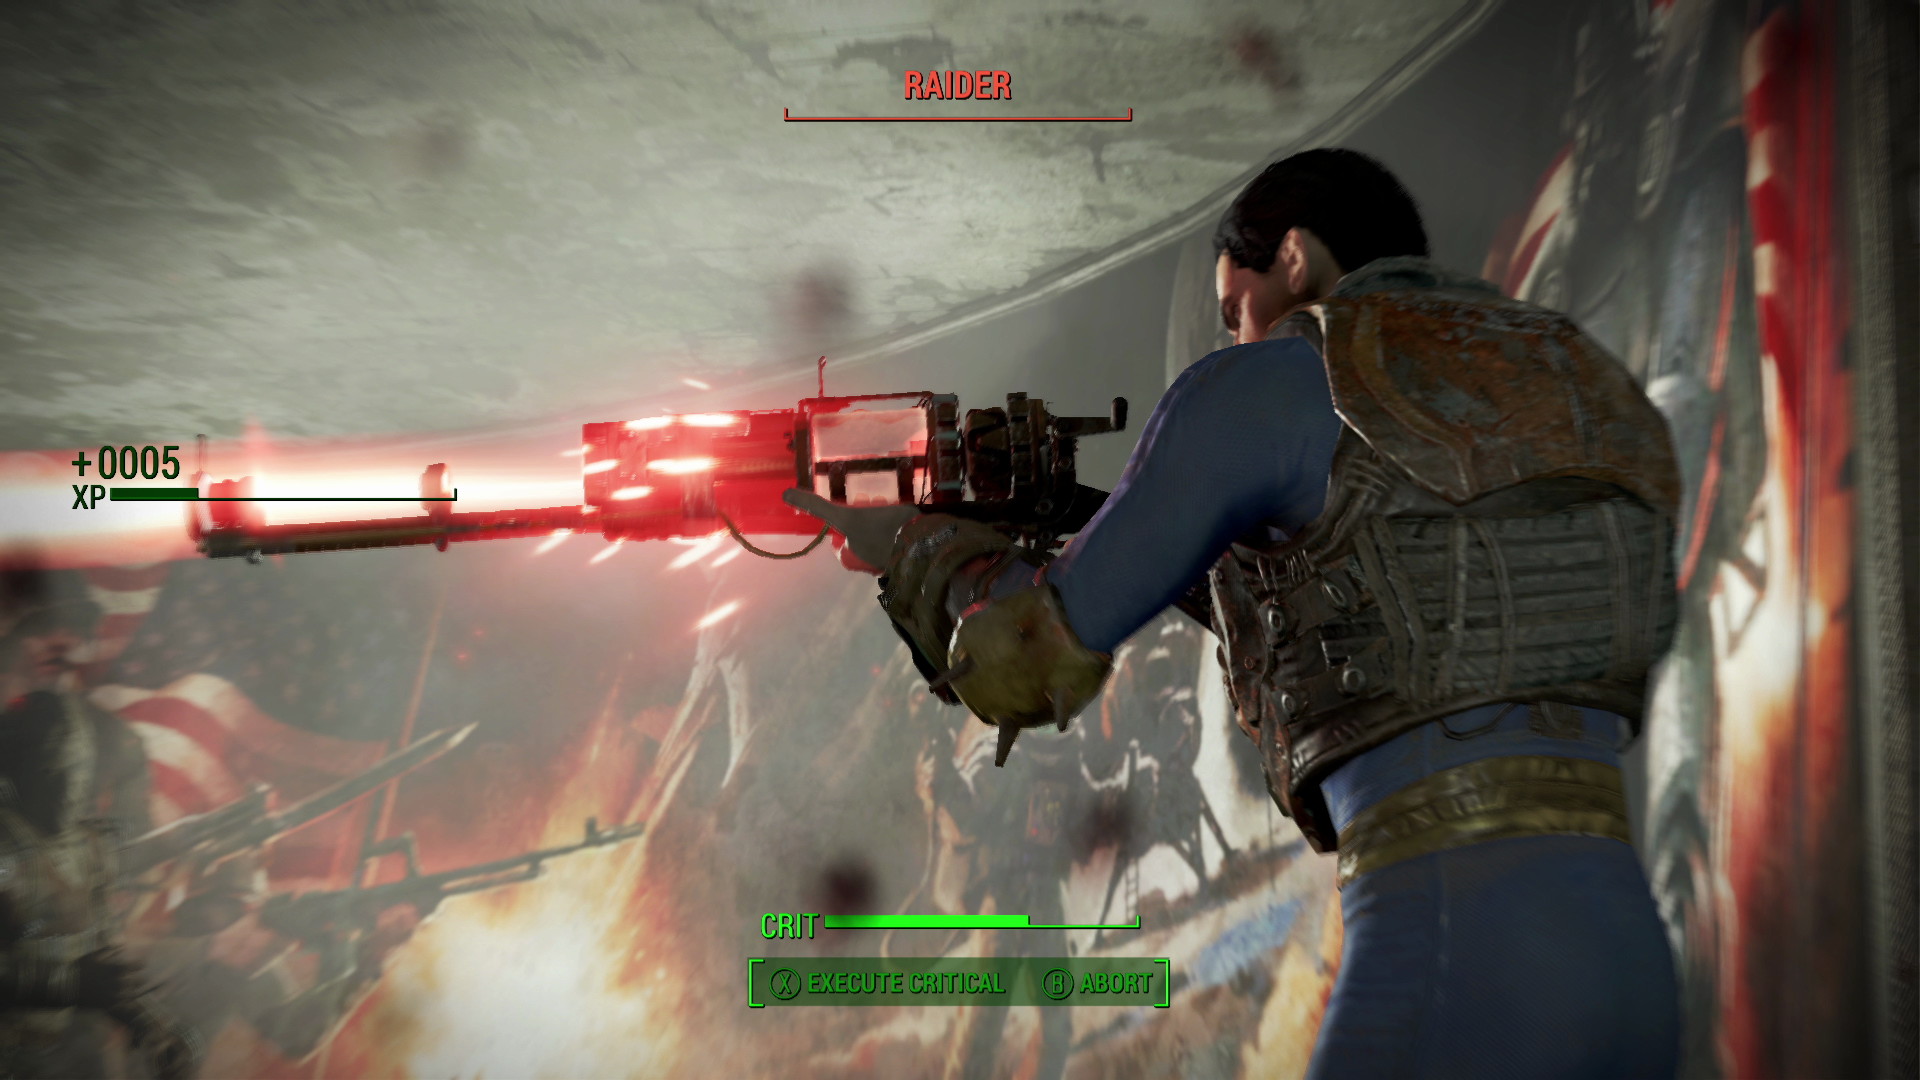 Fallout 4 - screenshot 20